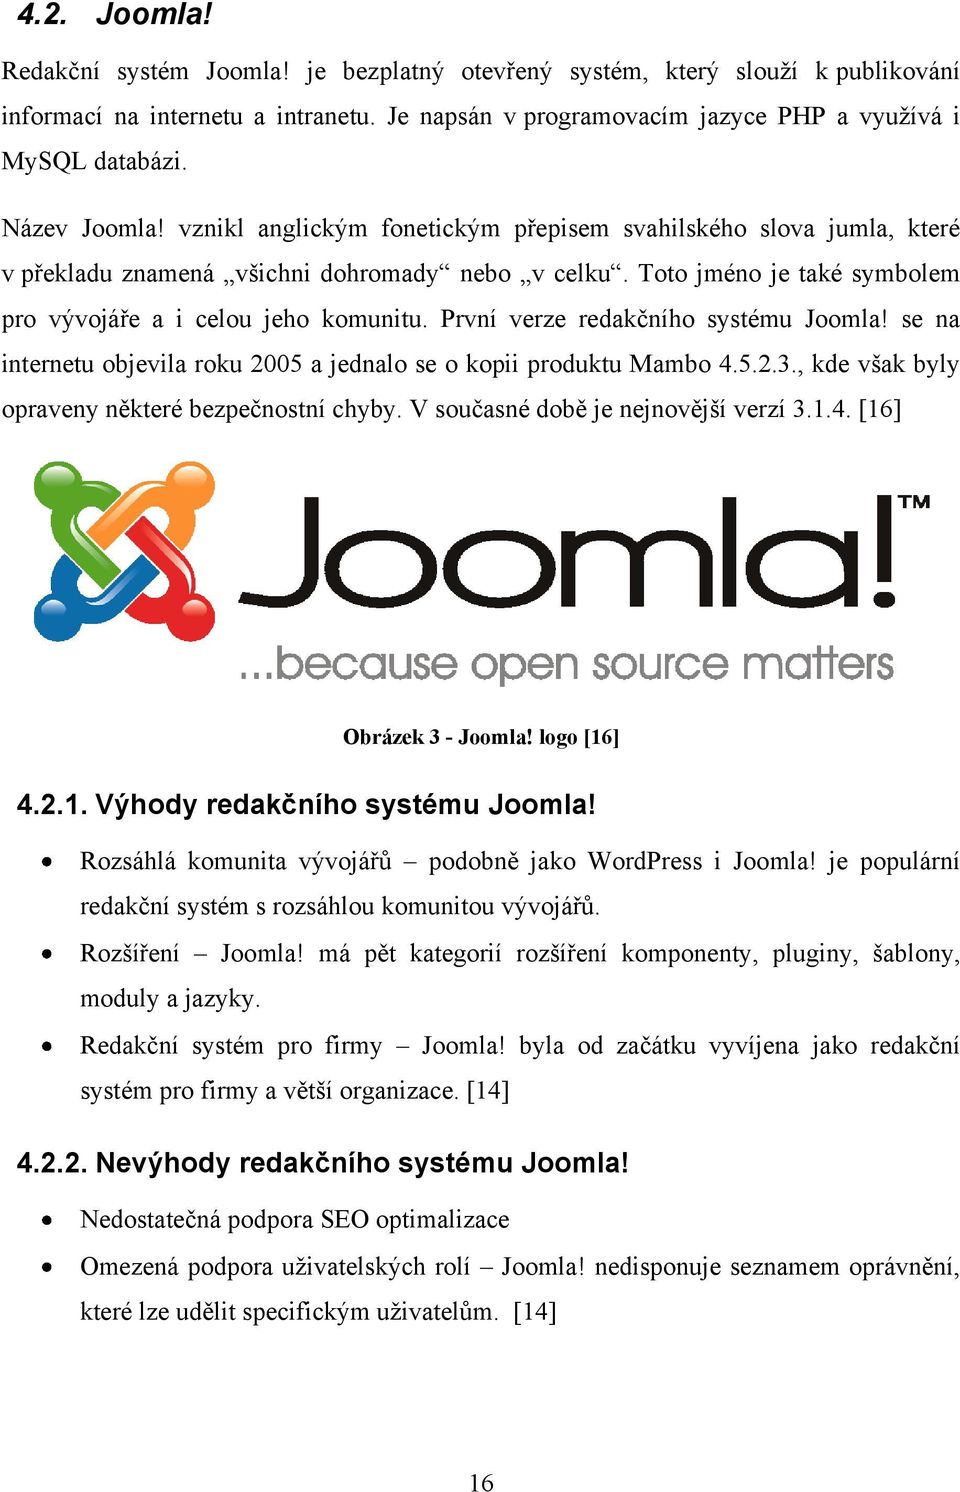 První verze redakčního systému Joomla! se na internetu objevila roku 2005 a jednalo se o kopii produktu Mambo 4.5.2.3., kde však byly opraveny některé bezpečnostní chyby.